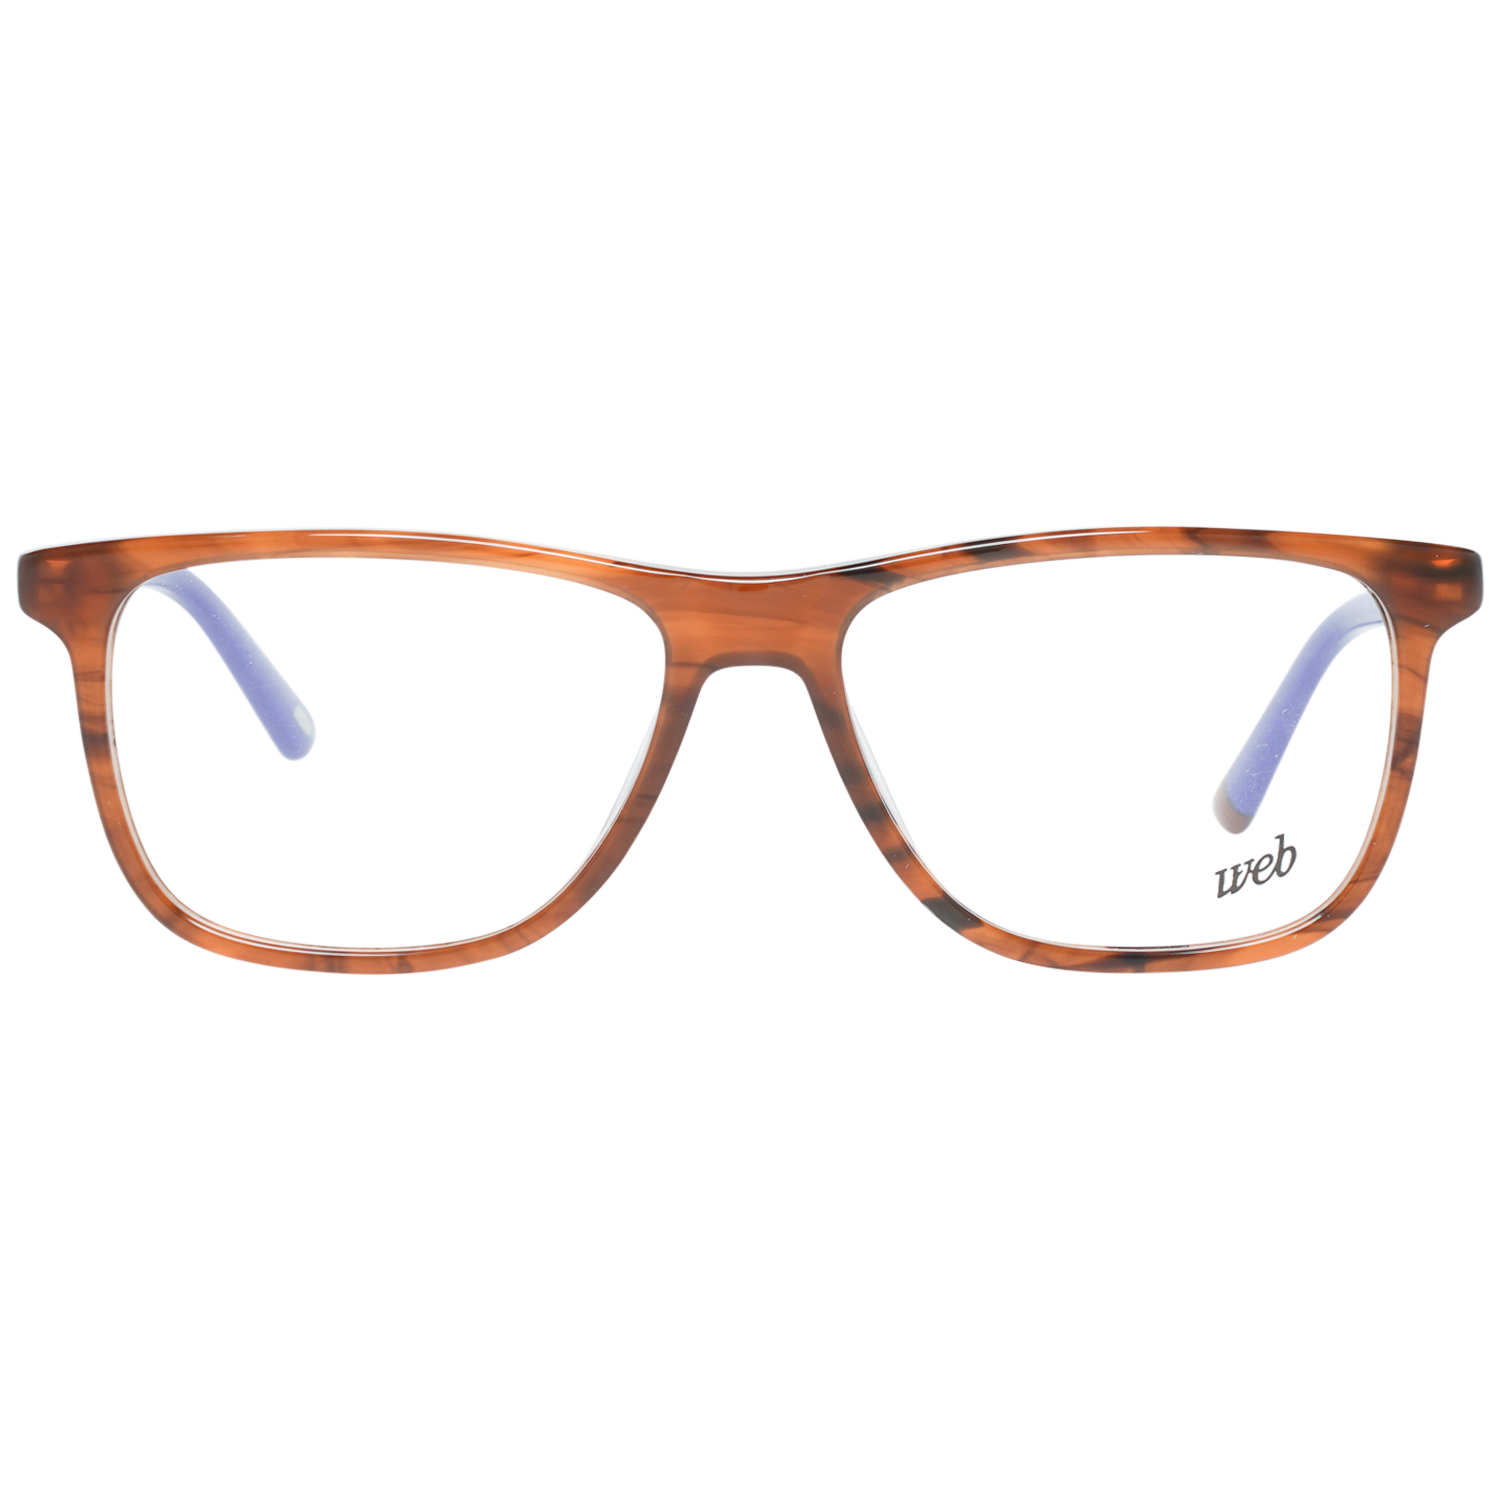 Web Frames Web Glasses Optical Frame WE5224 048 54 Eyeglasses Eyewear UK USA Australia 